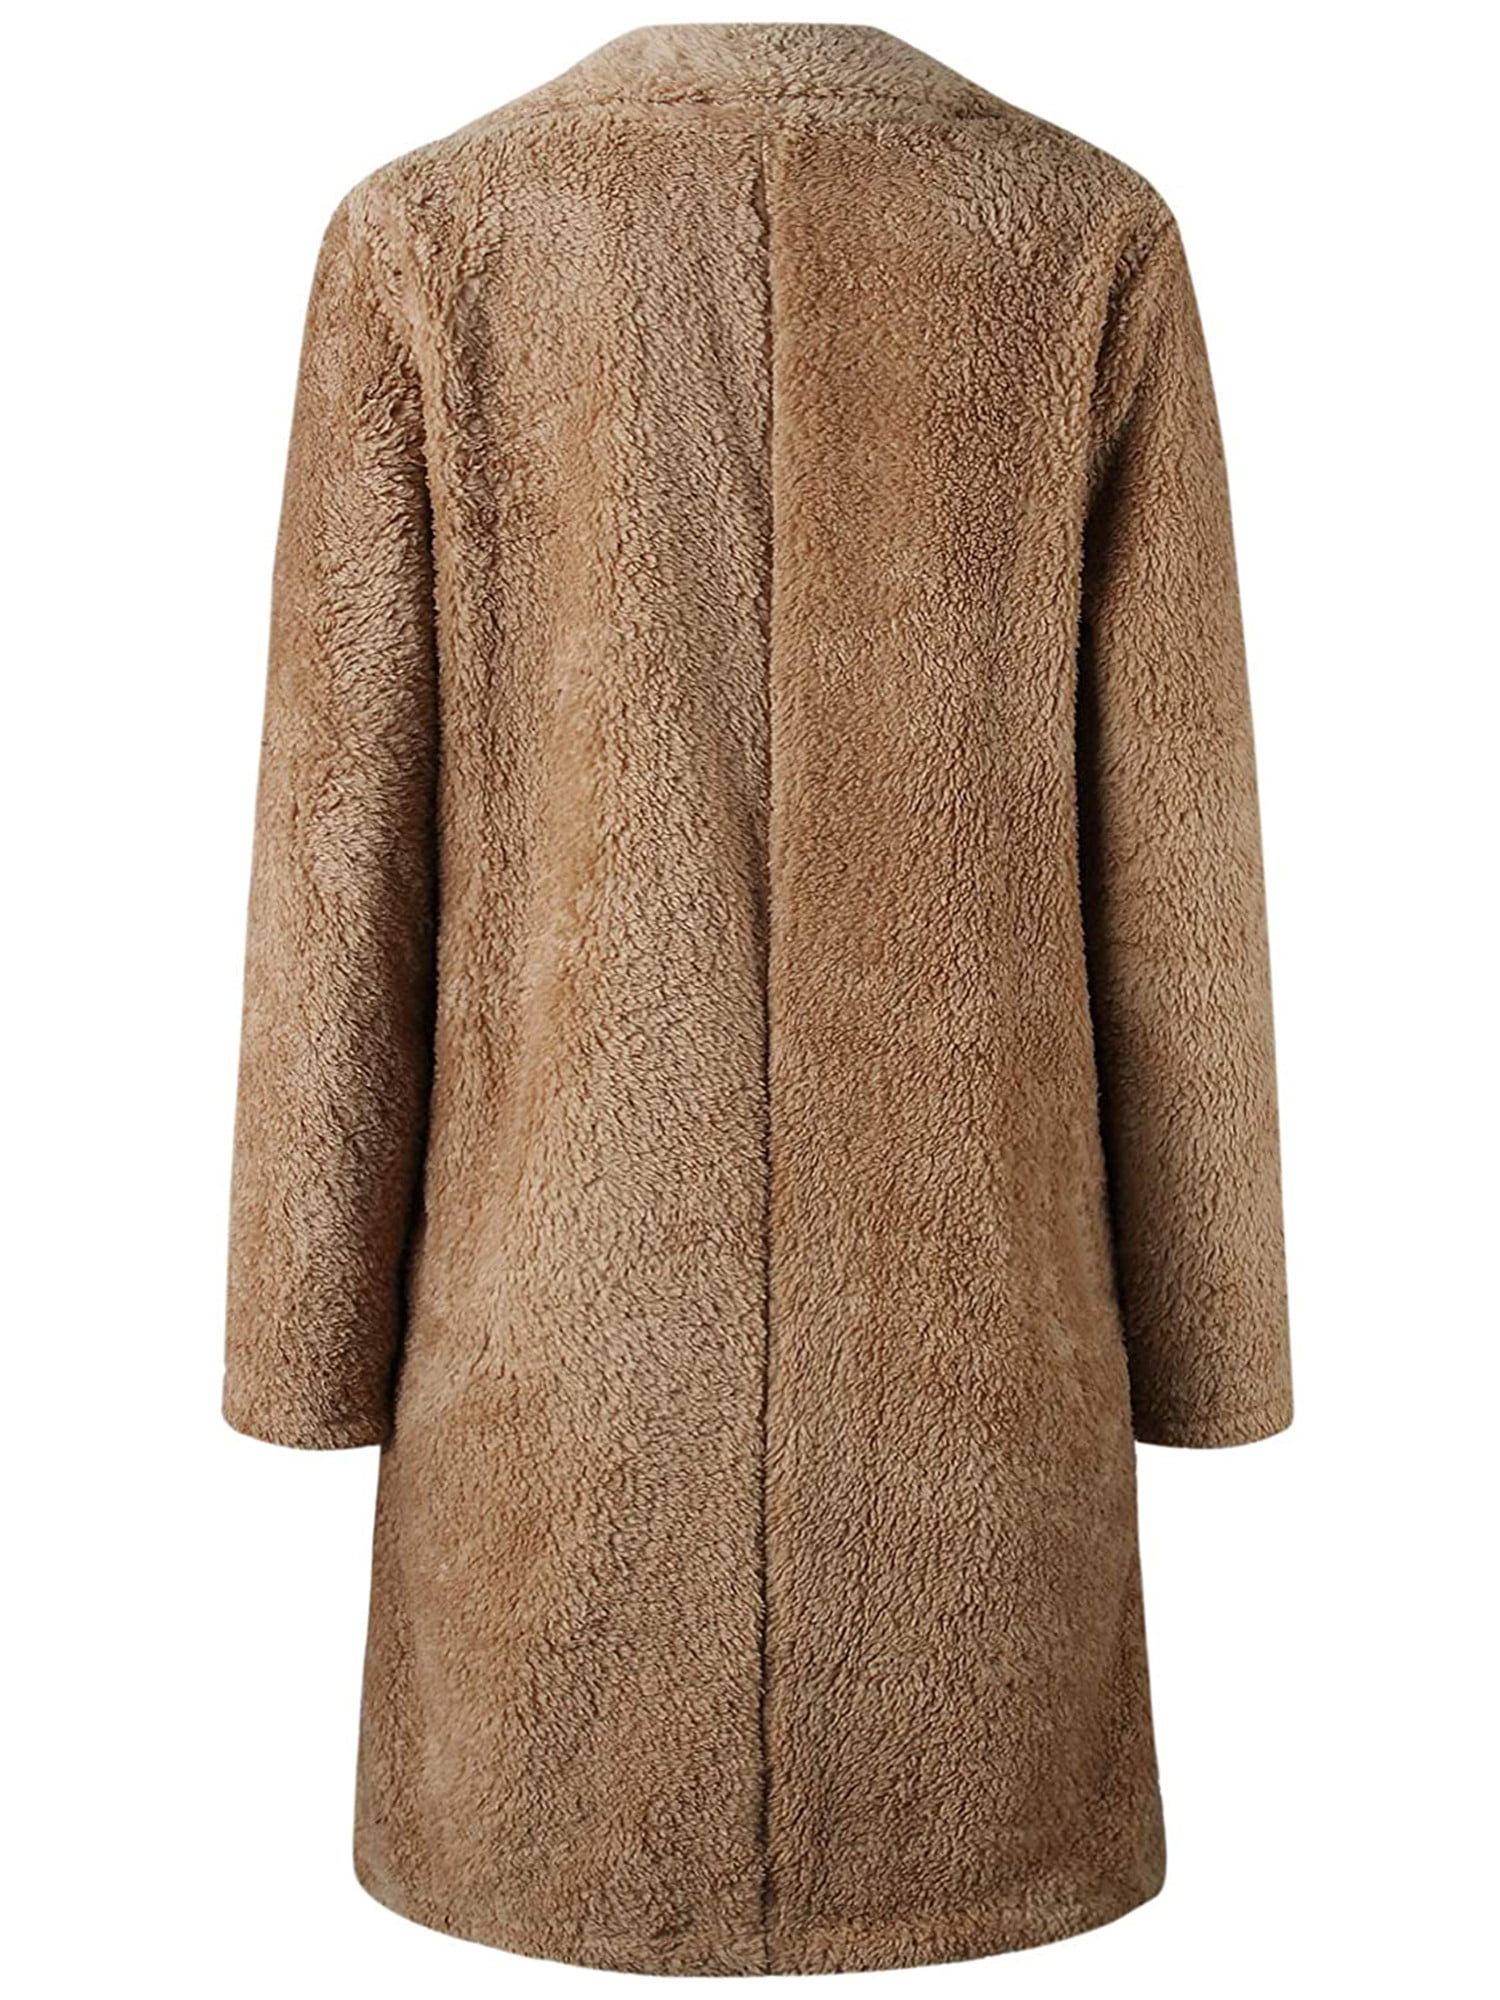 Wadonerful Women Outercoat Jacket Lapel Long Sleeve Button Coat Faux Fur Winter Warm Cardigan Solid Overcoat Outwear 